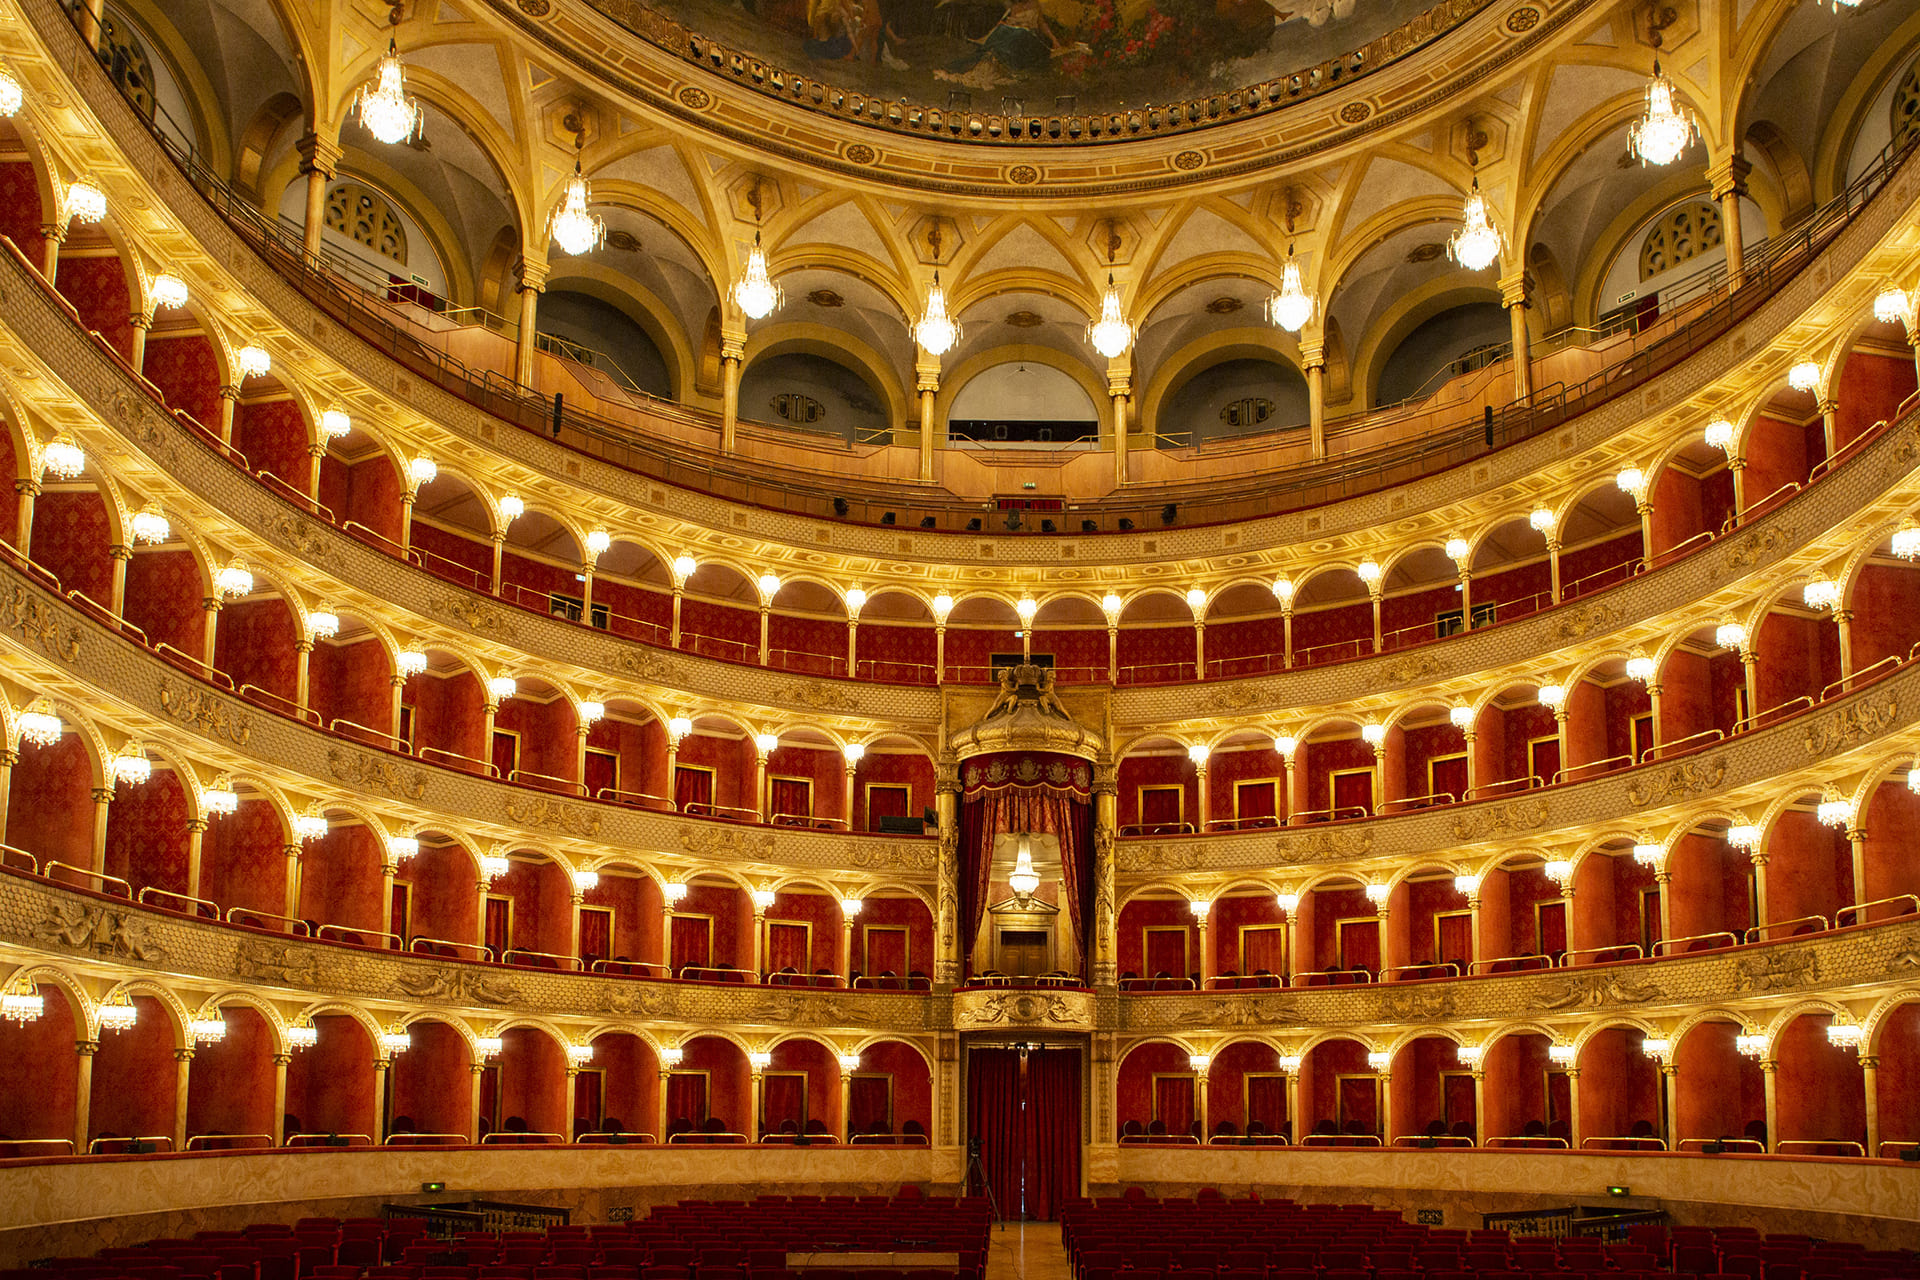 Surround sound for Salome at Il Teatro dell’Opera di Roma